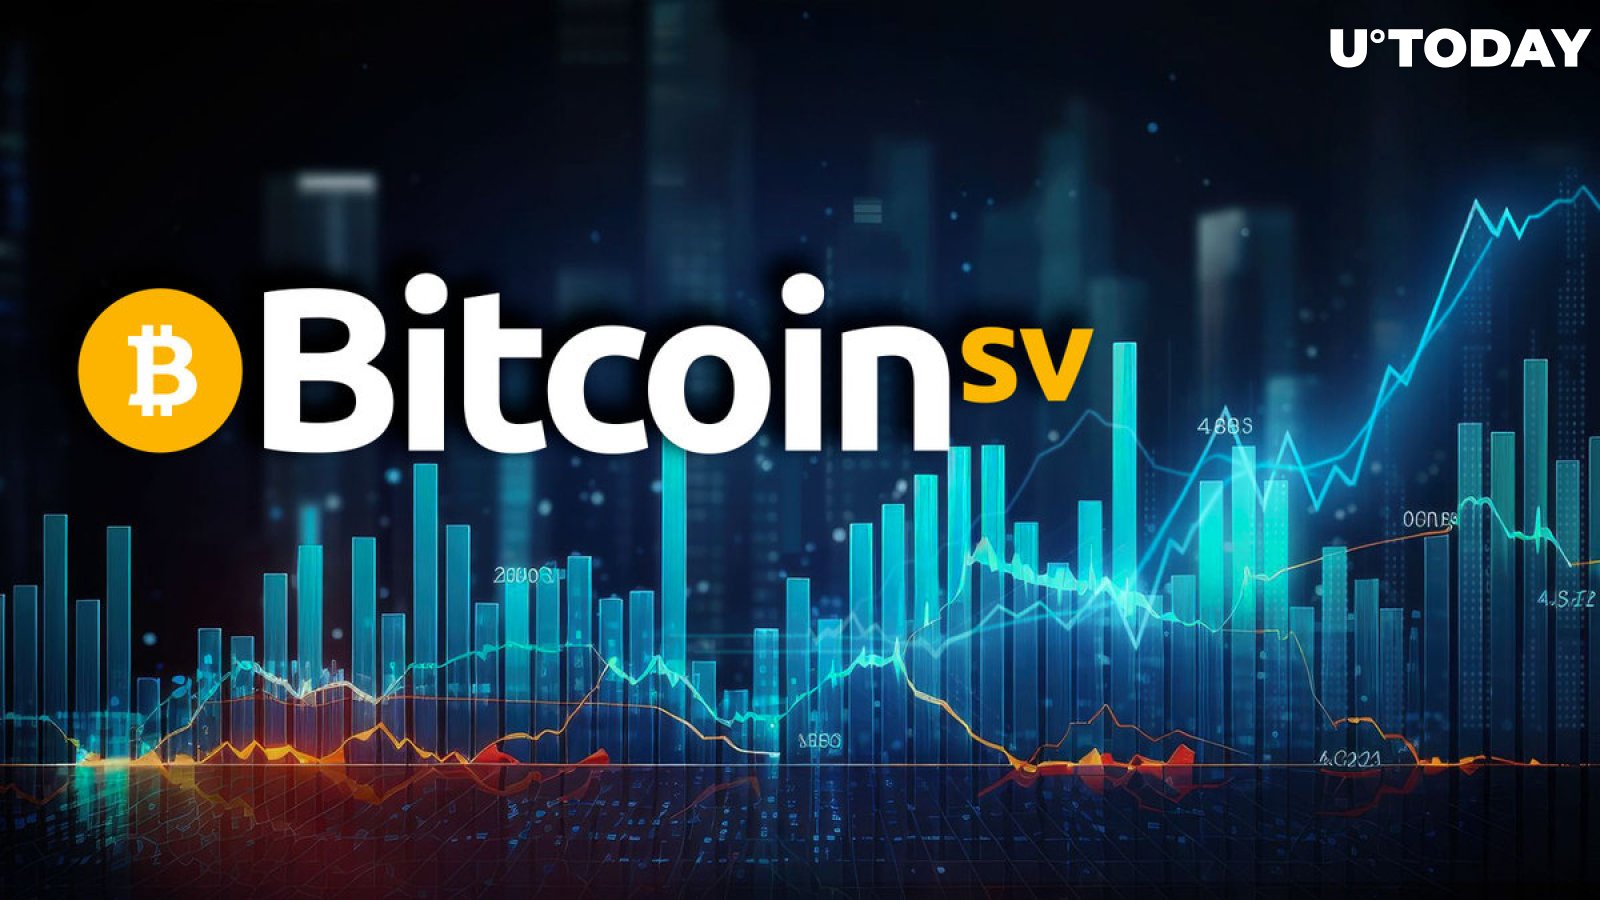 Bitcoin SV (BSV) Surges 65%. Key Reason Why 